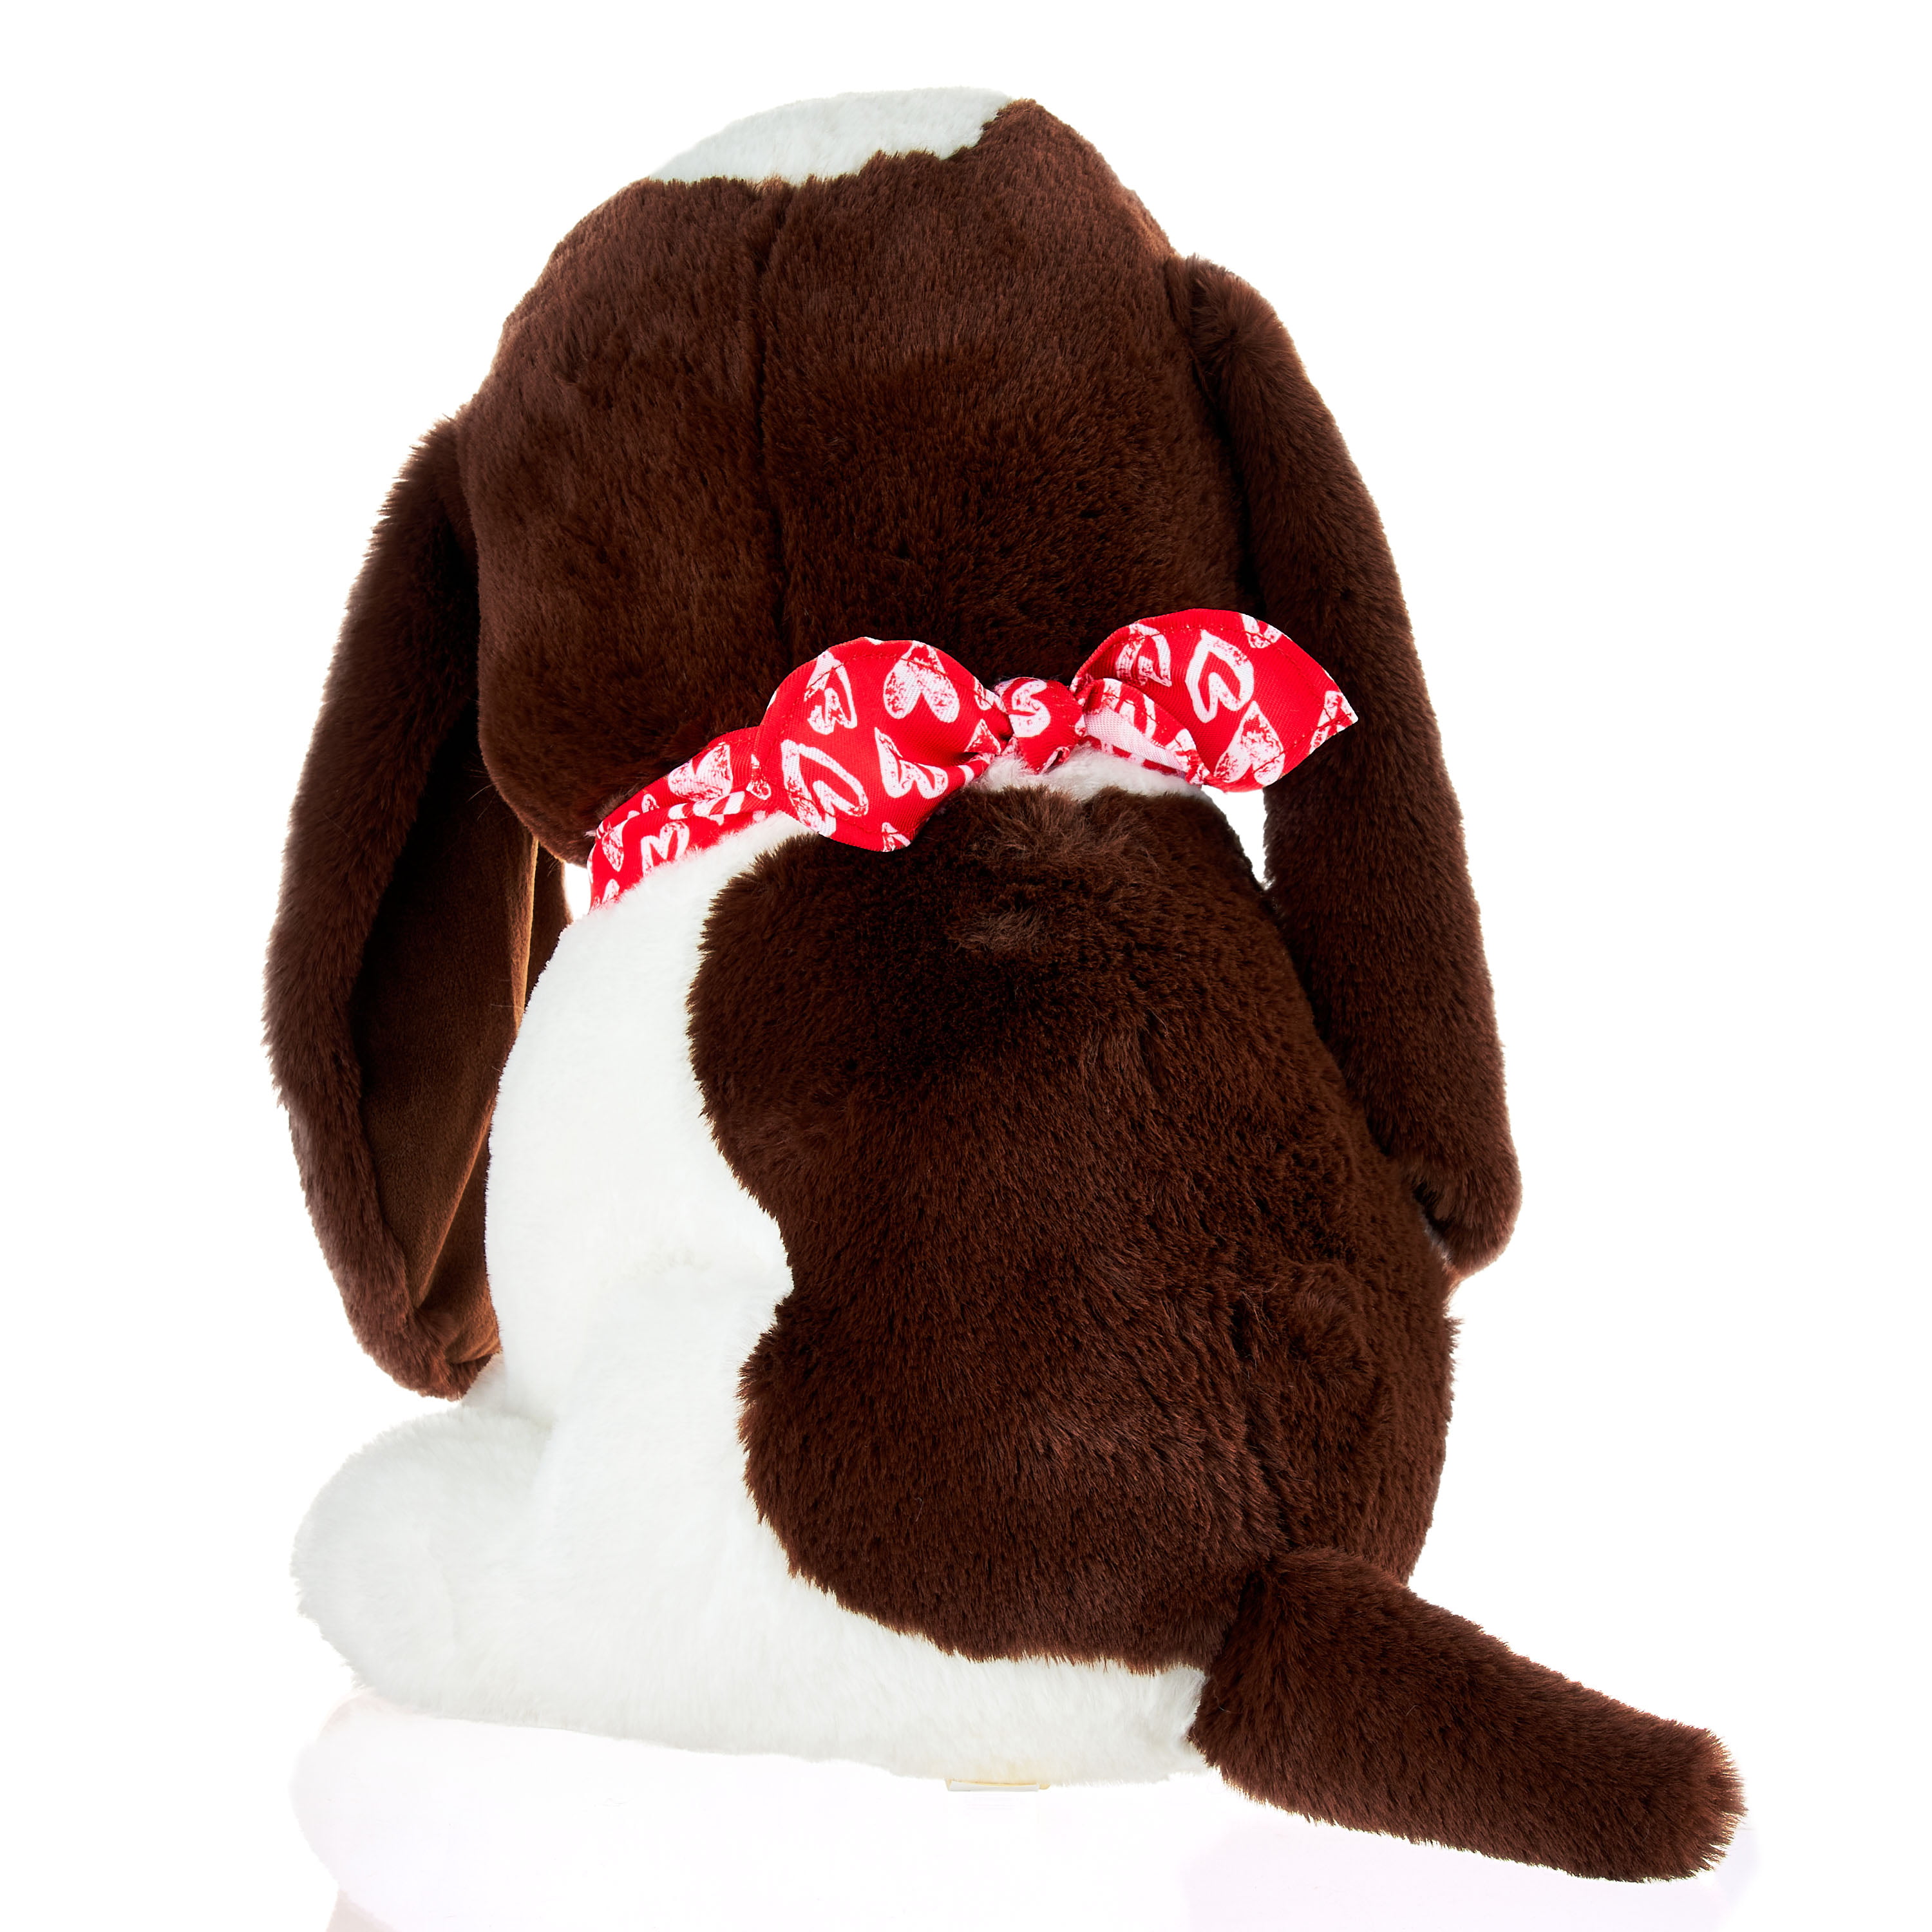 Basset Hound Dog soft plush toy, 30cm, toy dog